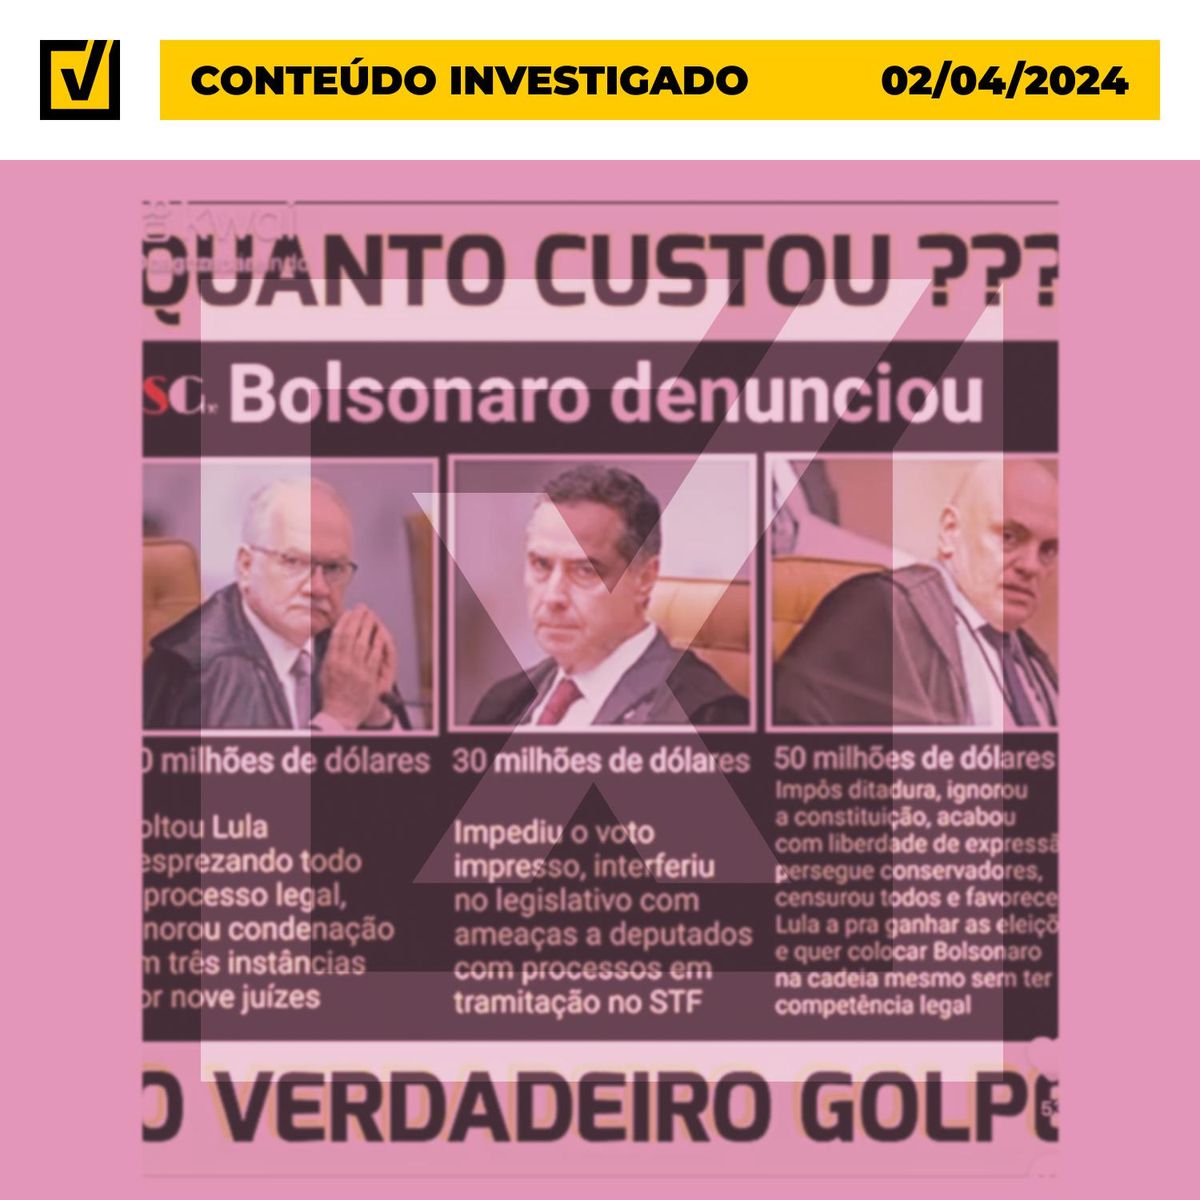 Bolsonaro não apresentou provas de que ministros do STF receberam propina, diferentemente do que afirma vídeo